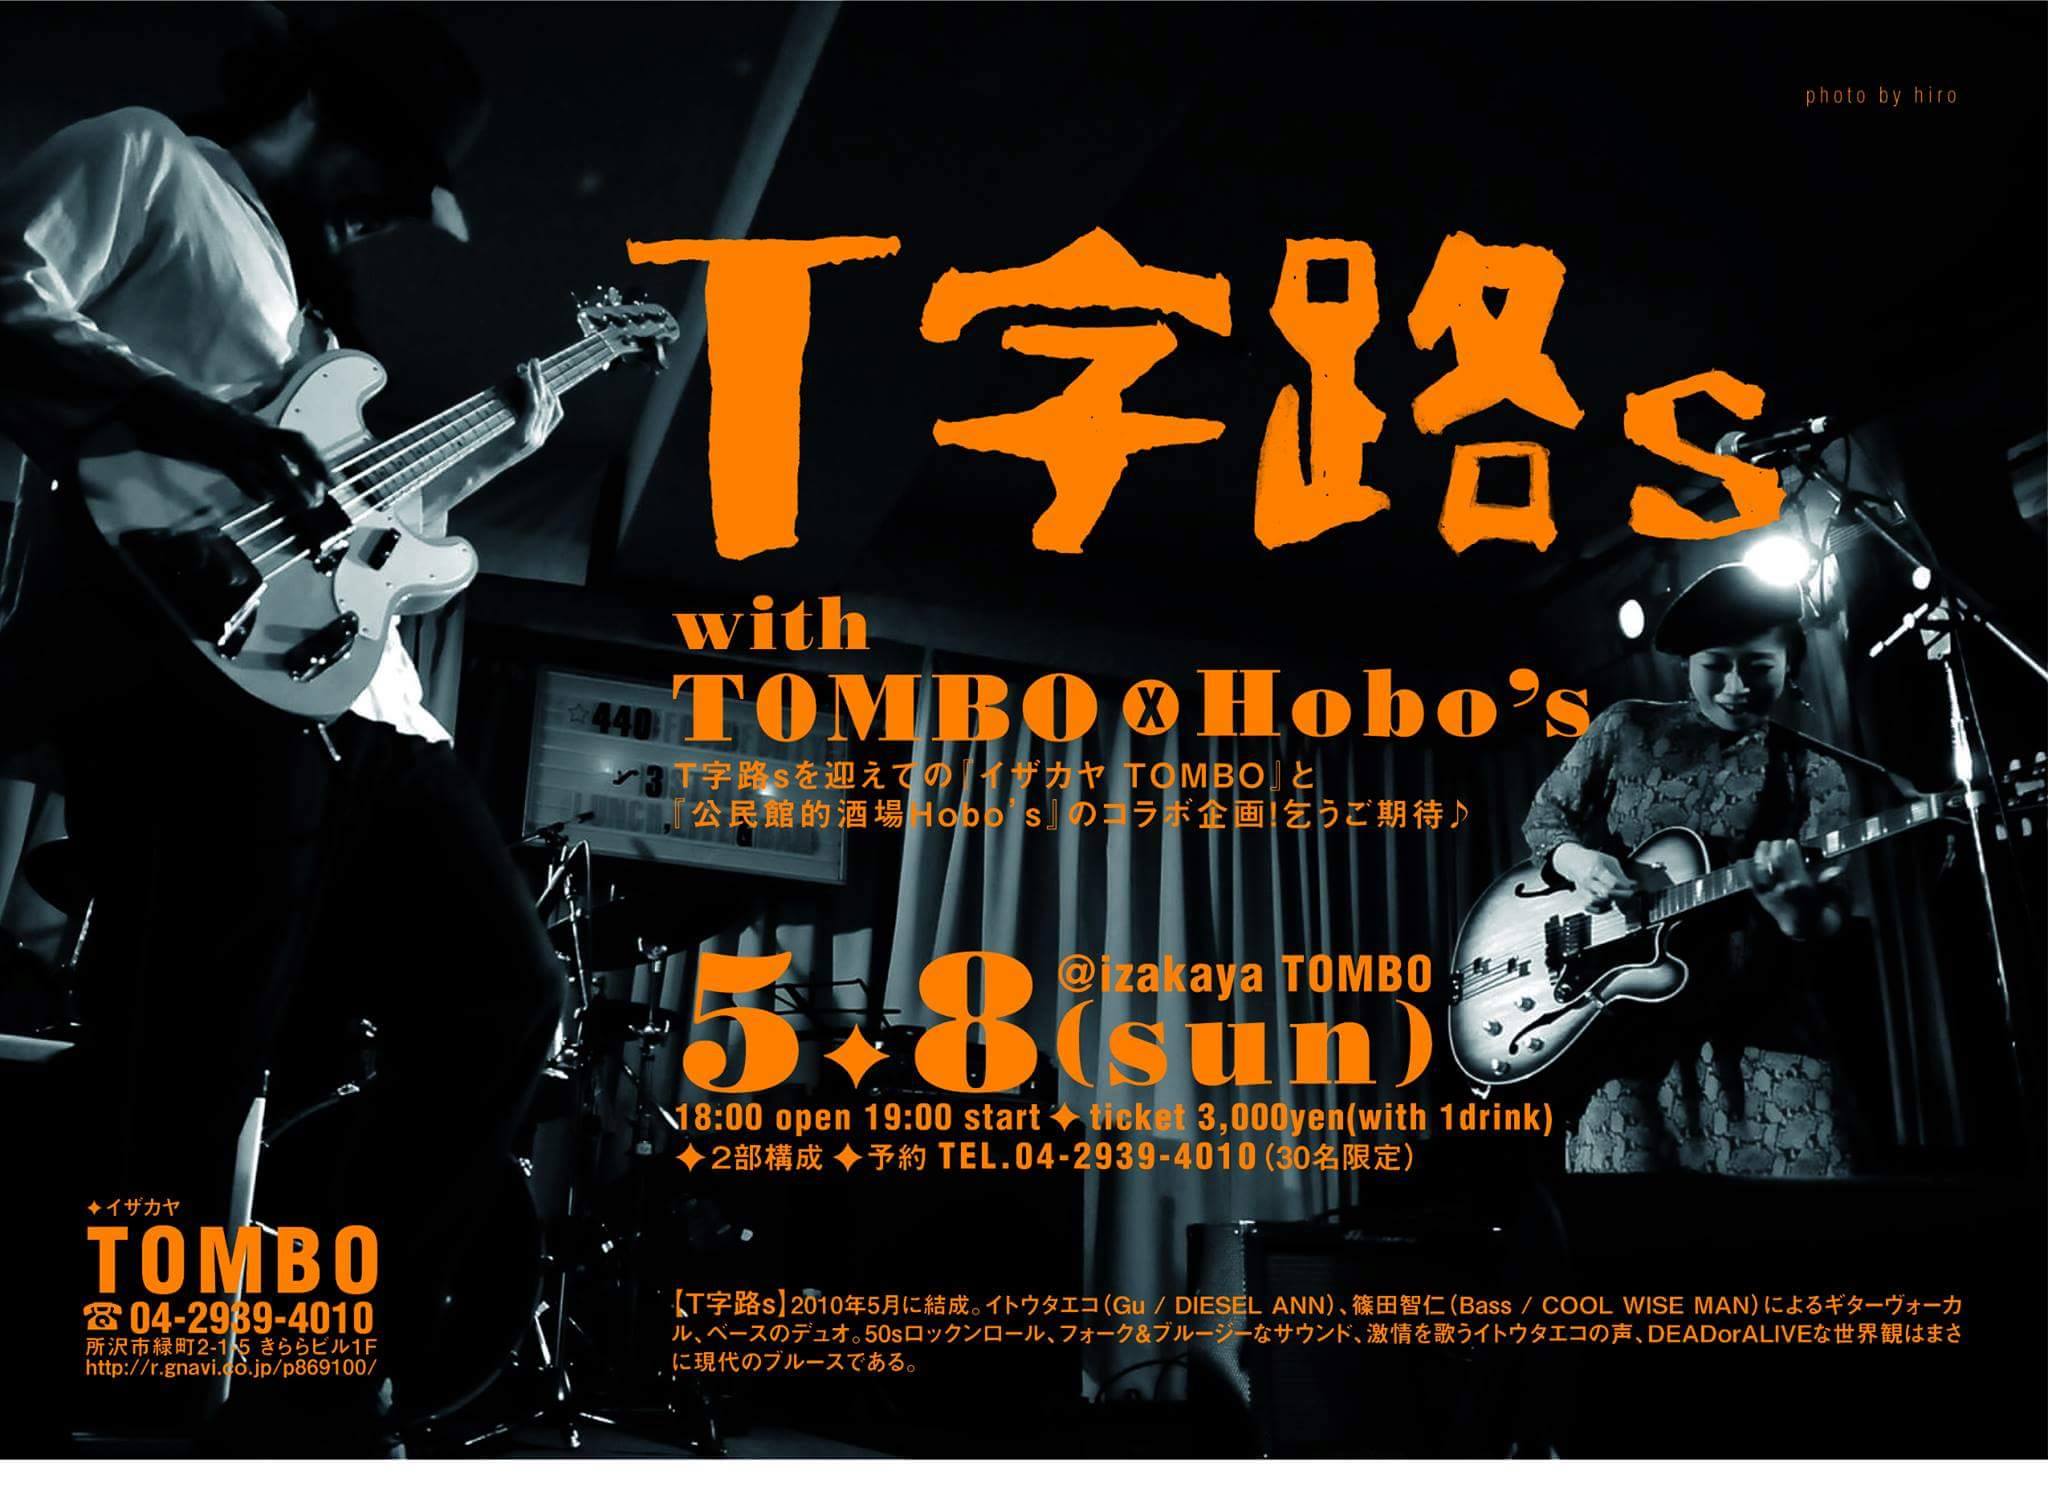 新所沢 TOMBO 【Ｔ字路s with TOMBO×Hobo’s】